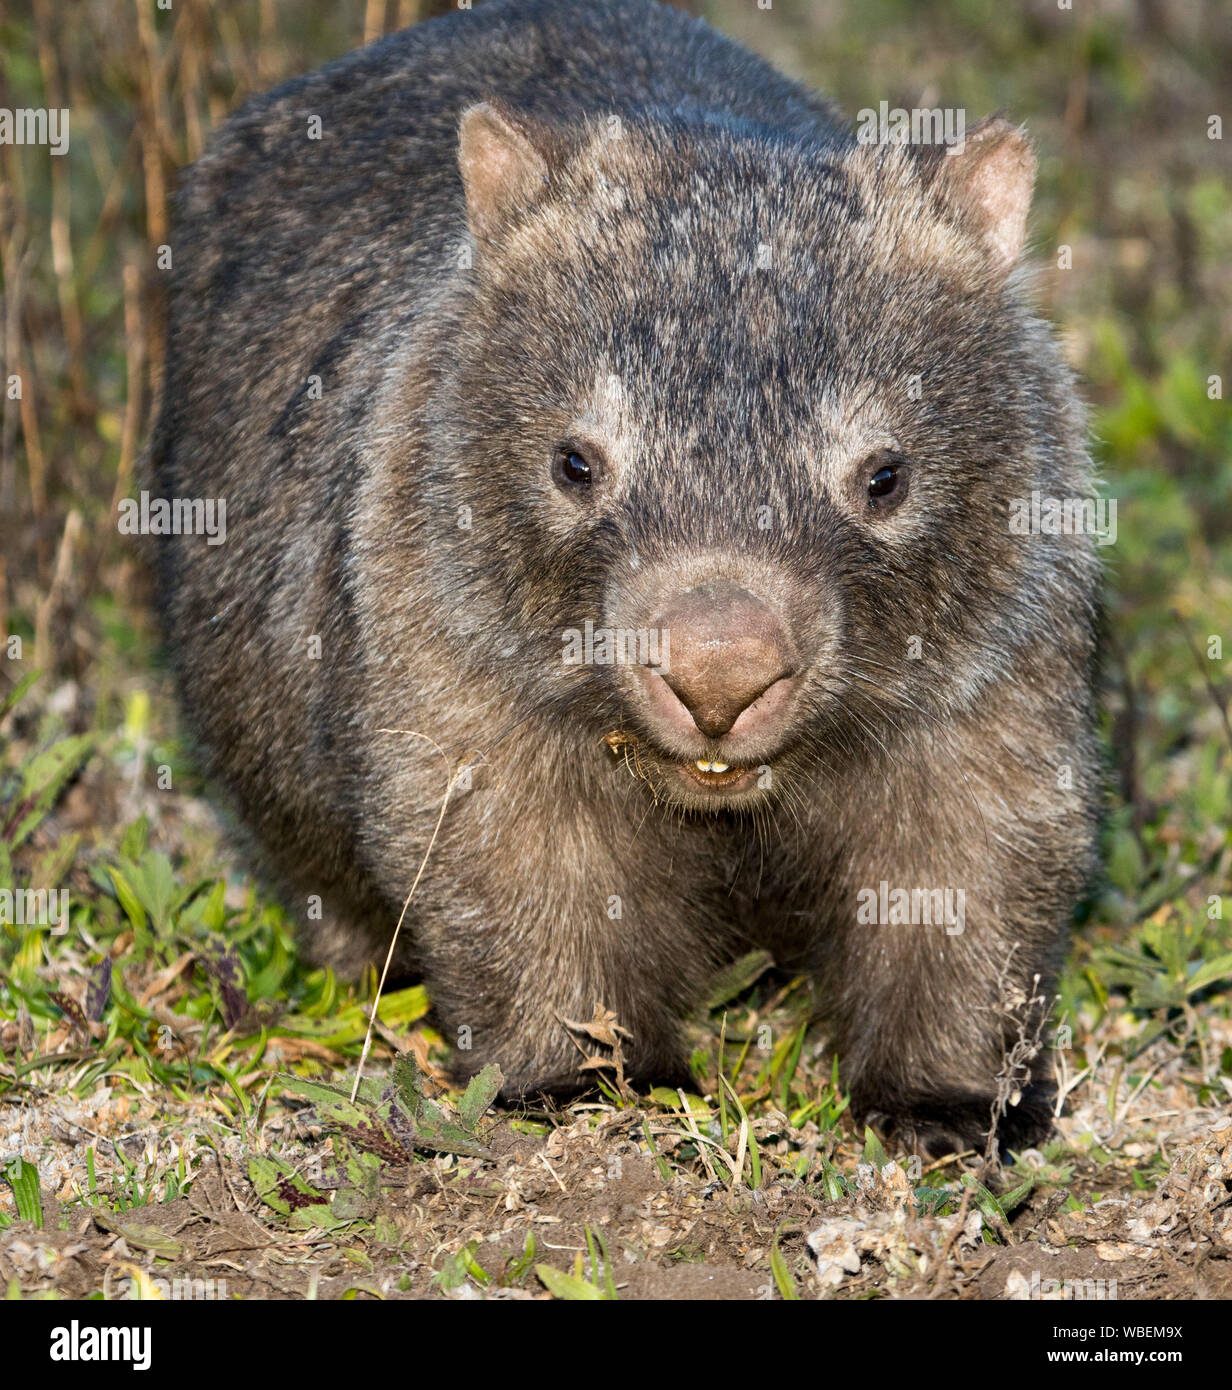 Wombat comune, Vombatus ursinus, nel selvaggio e fissando la telecamera, con grandi denti chiaramente visibile, a Dharug National Park, NSW Australia Foto Stock